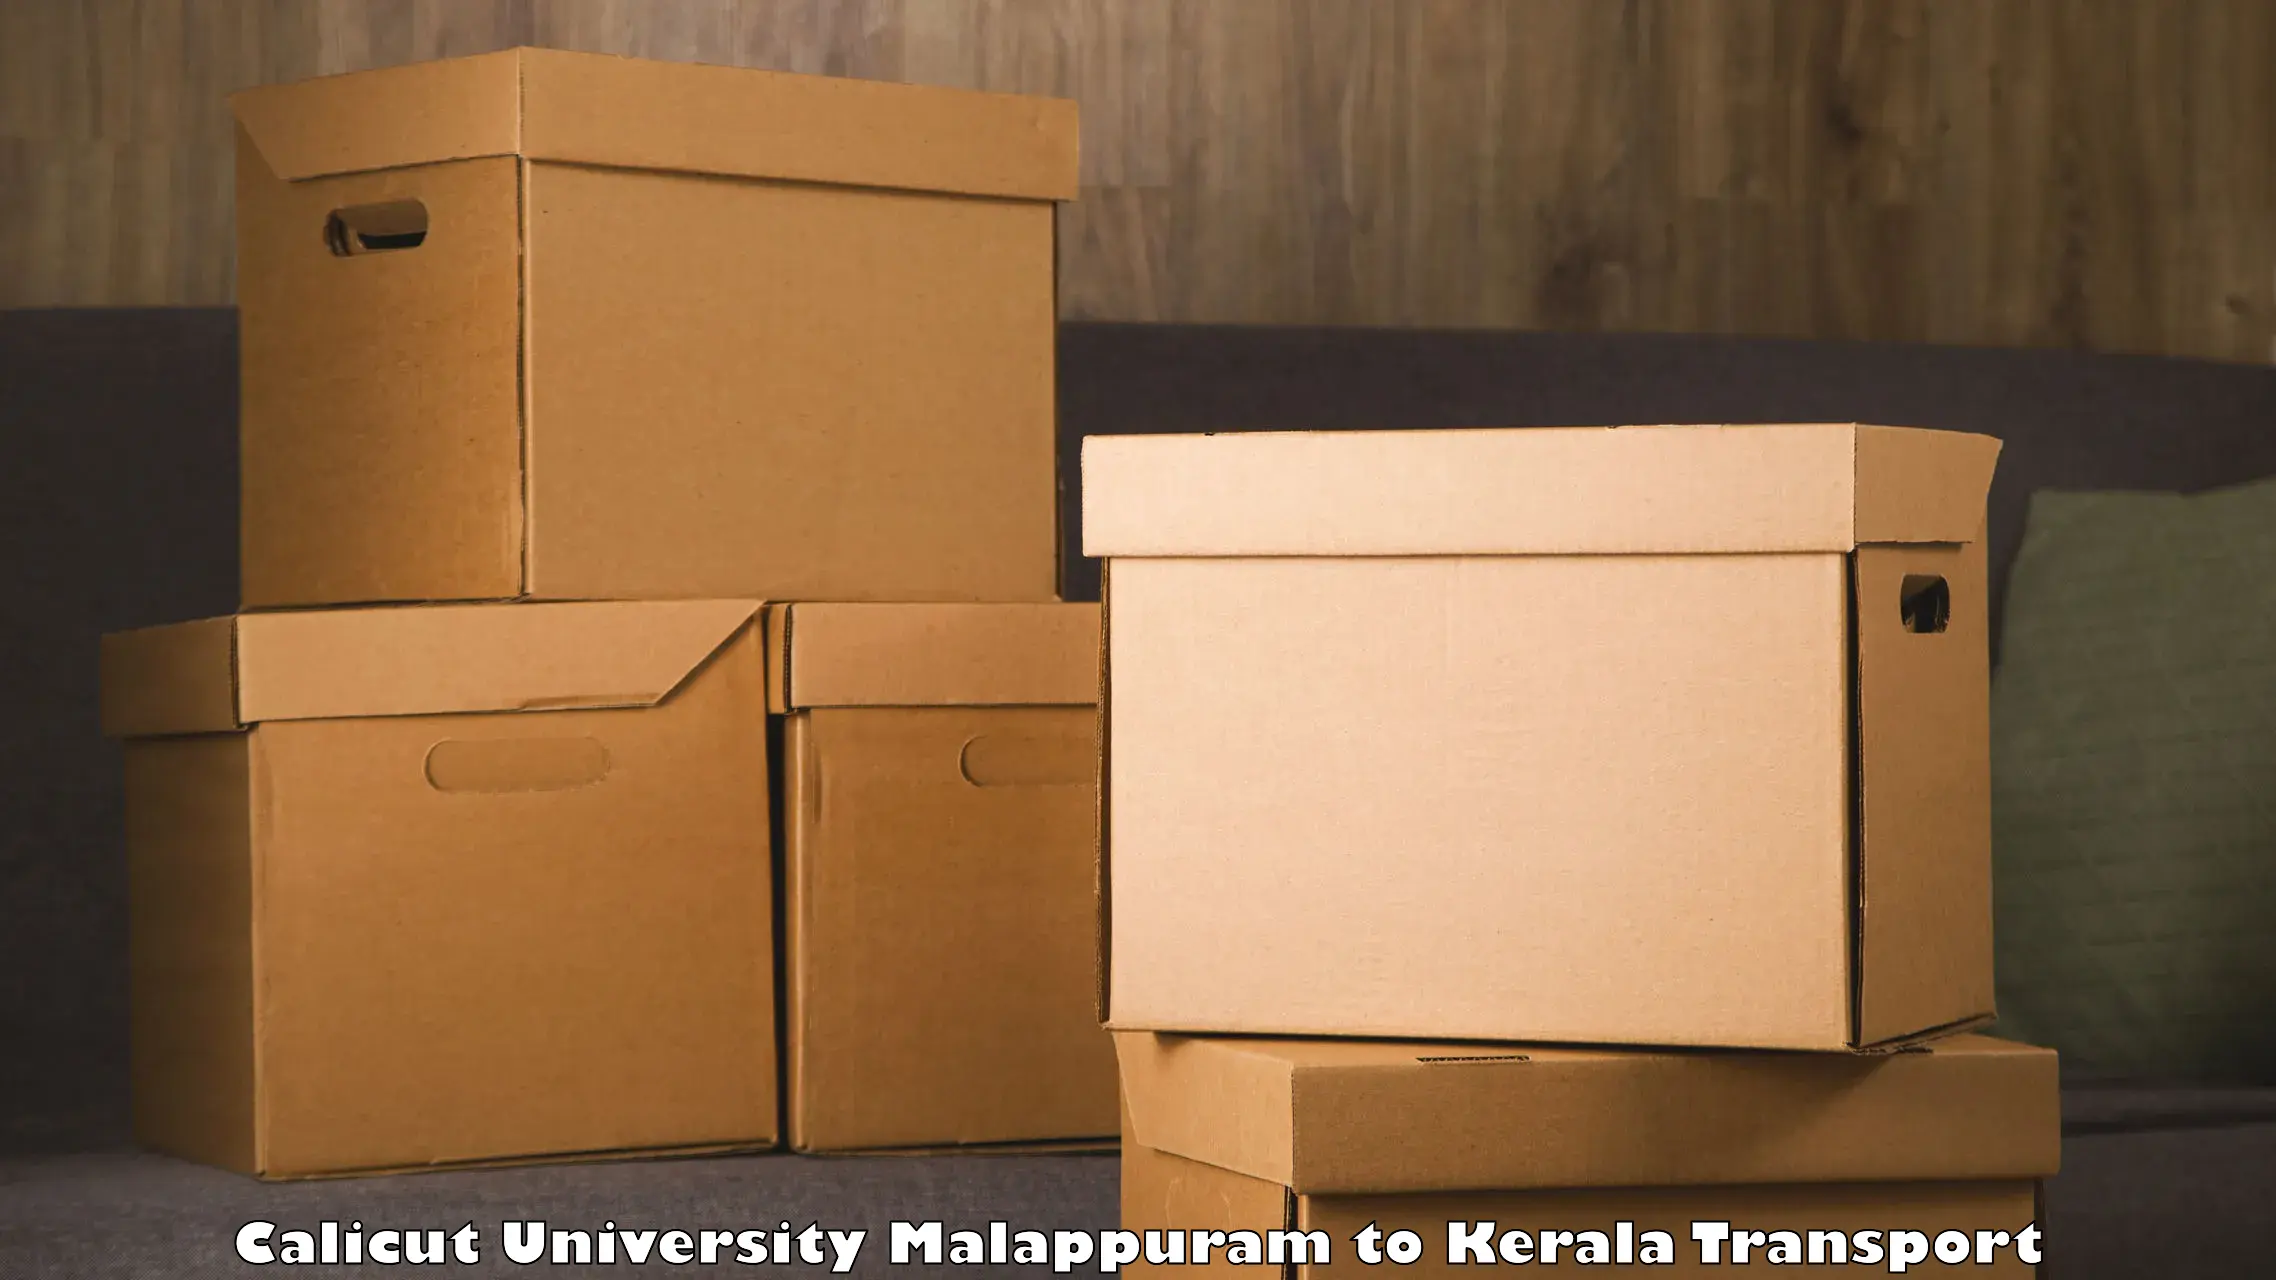 Lorry transport service Calicut University Malappuram to Kuttikol